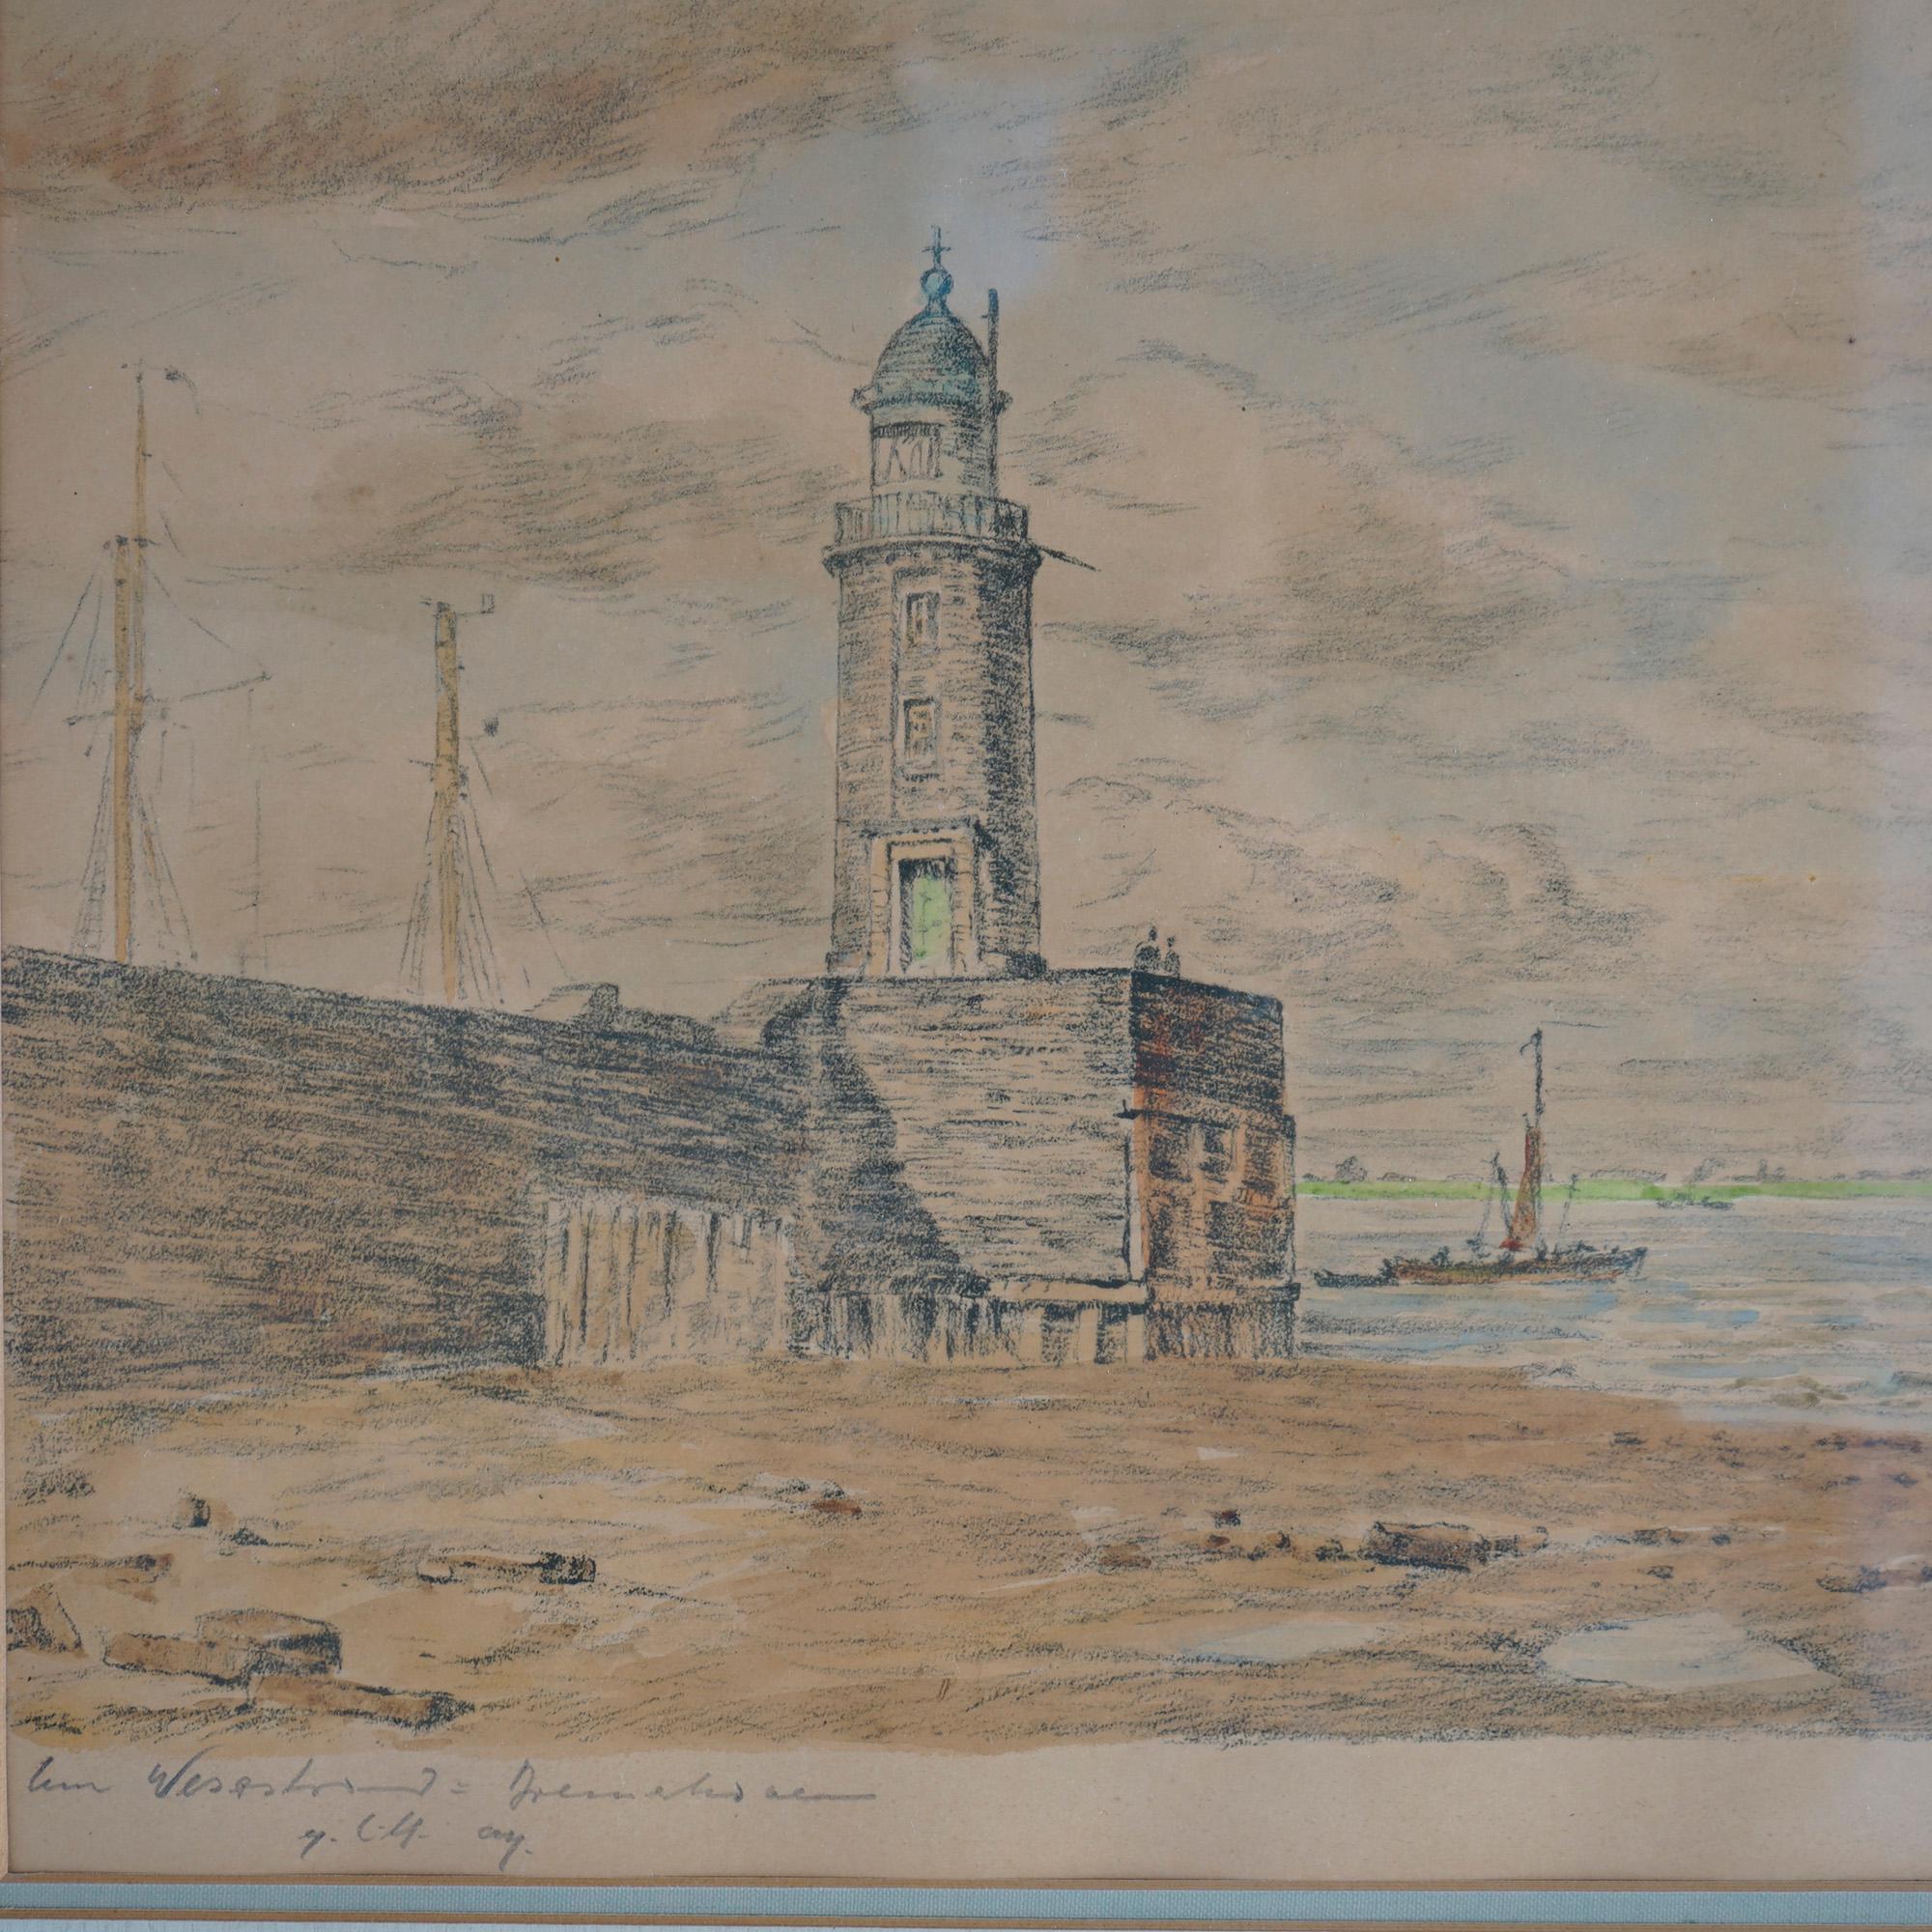 Une peinture ancienne de paysage marin par Paul Earnst Wilke offre une scène côtière en aquarelle avec un phare, des bateaux et des personnages, l'artiste a signé en bas à droite, encadré, c1940.

Mesures : 20,5'' H x 22,5'' L x 1'' P.

Note sur le